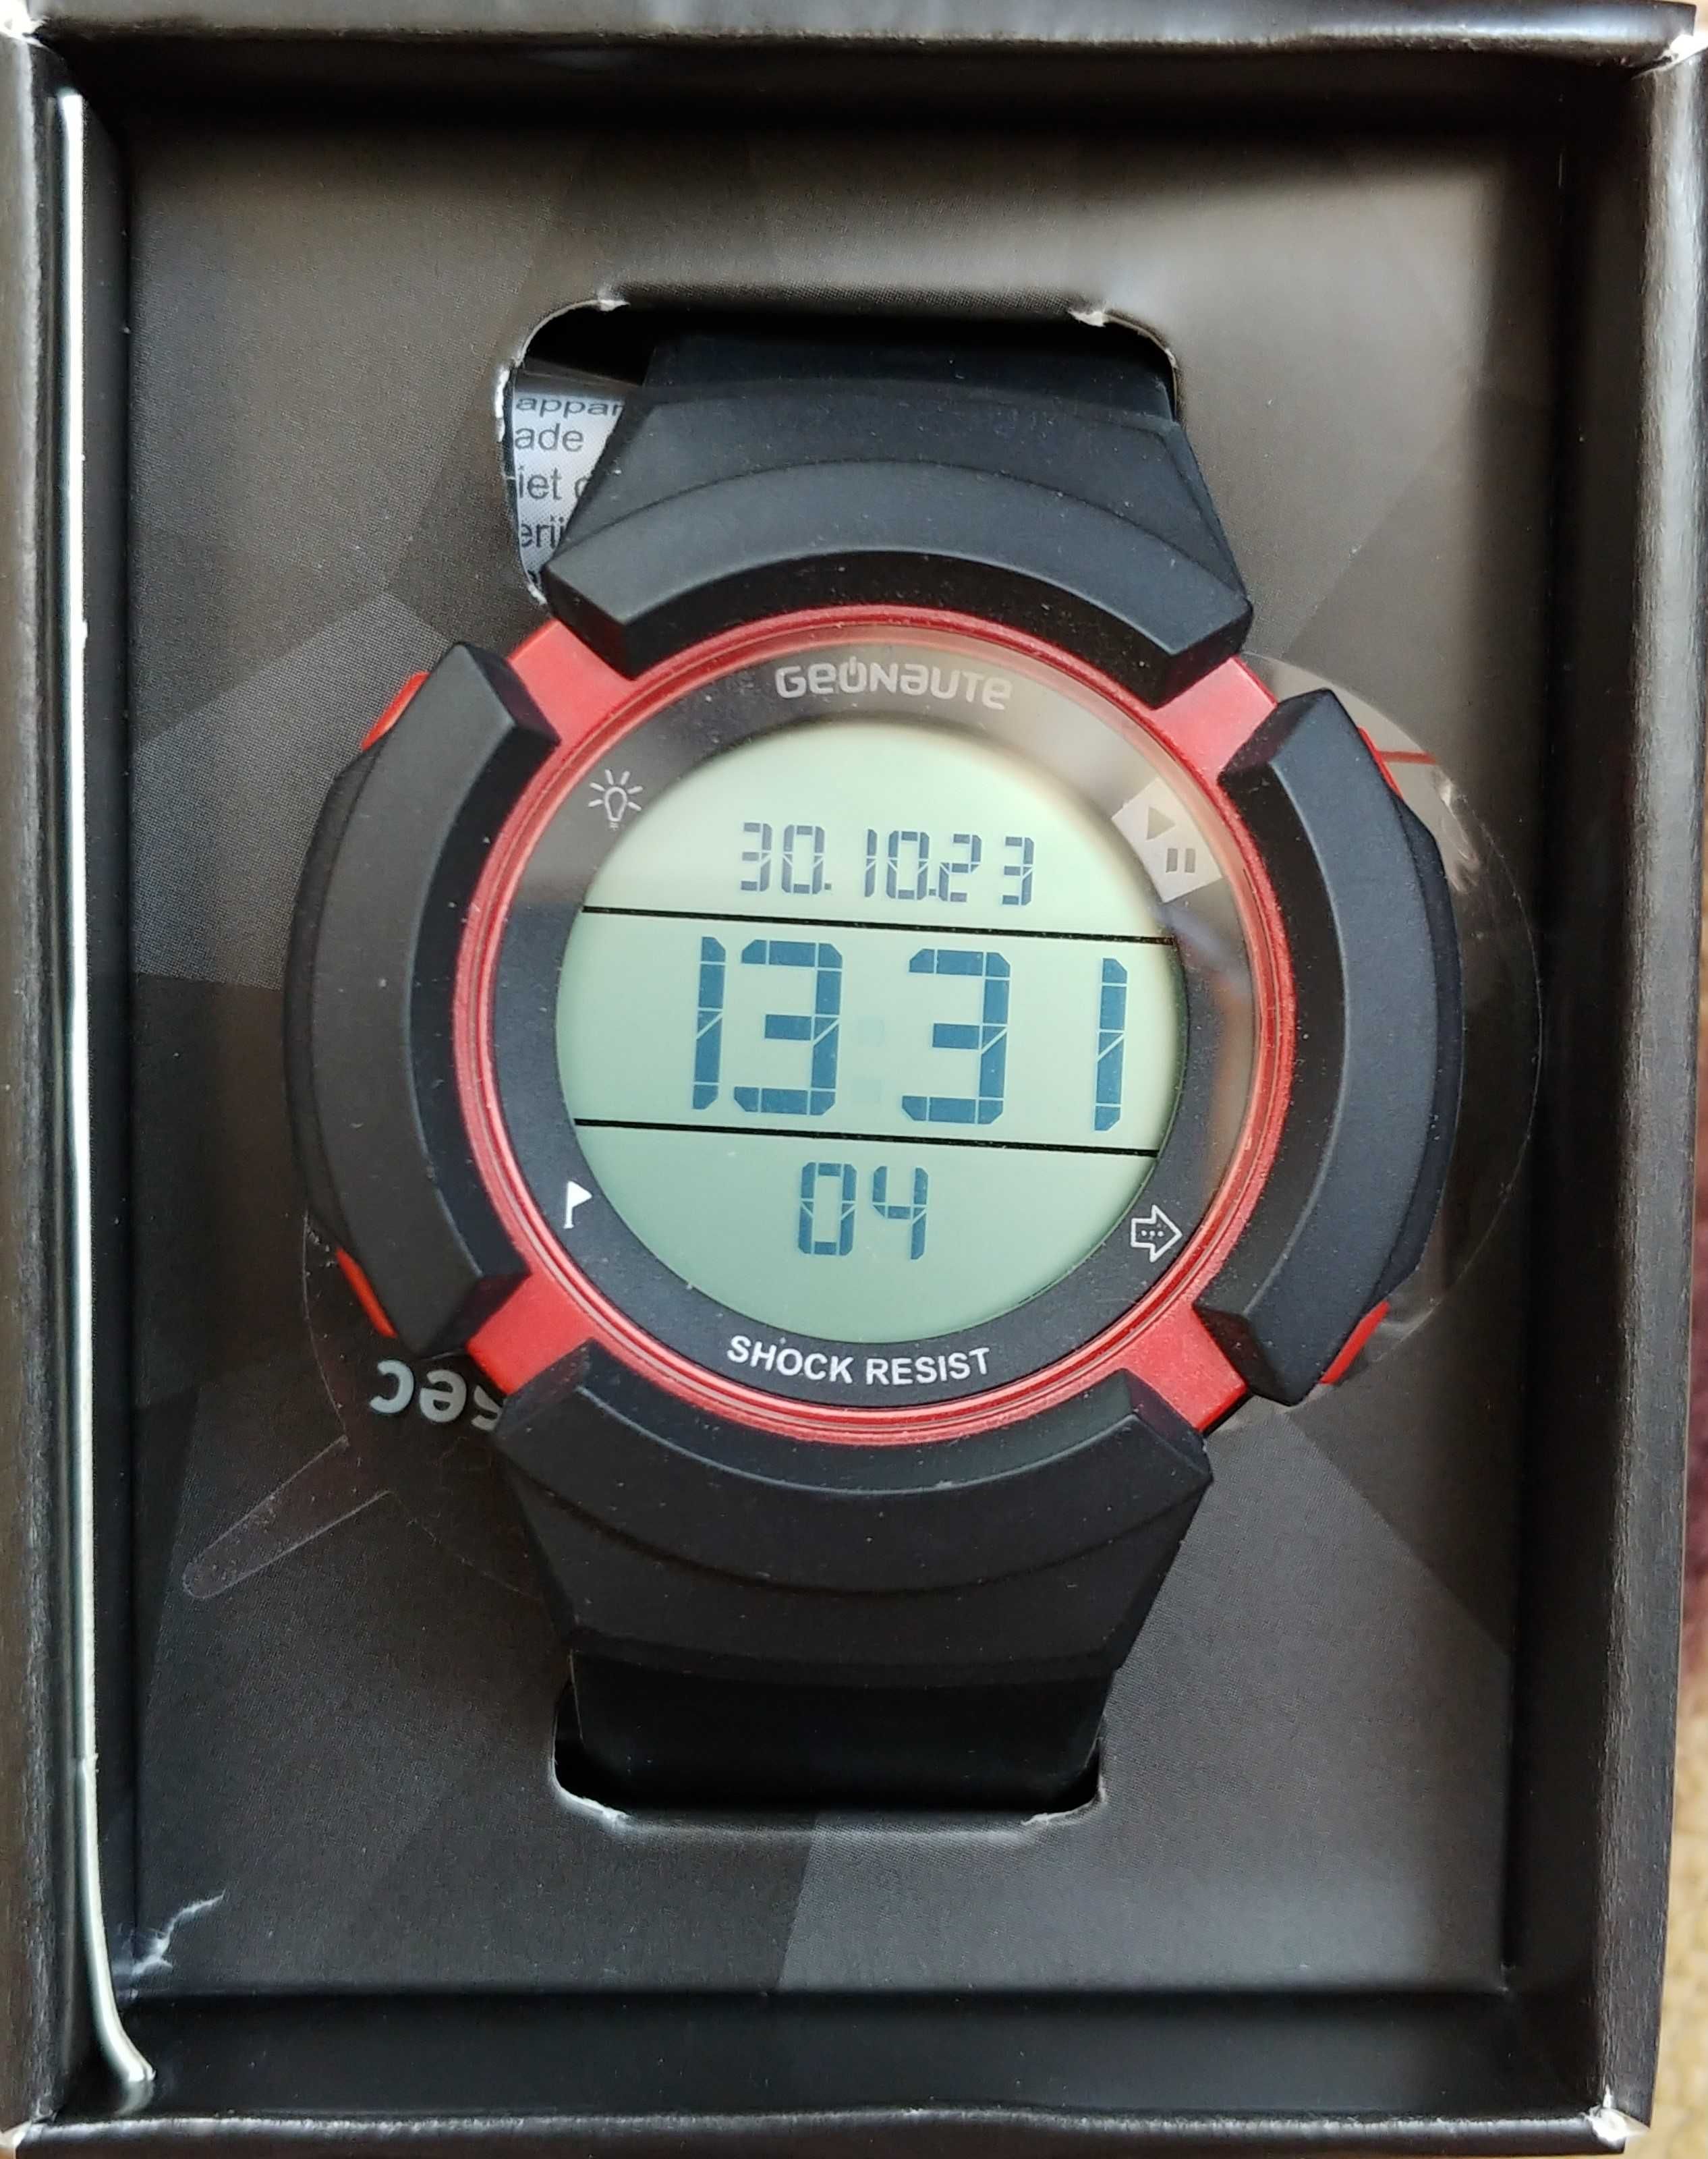 Zegarek sportowy Geonaute W700XC M SWIP